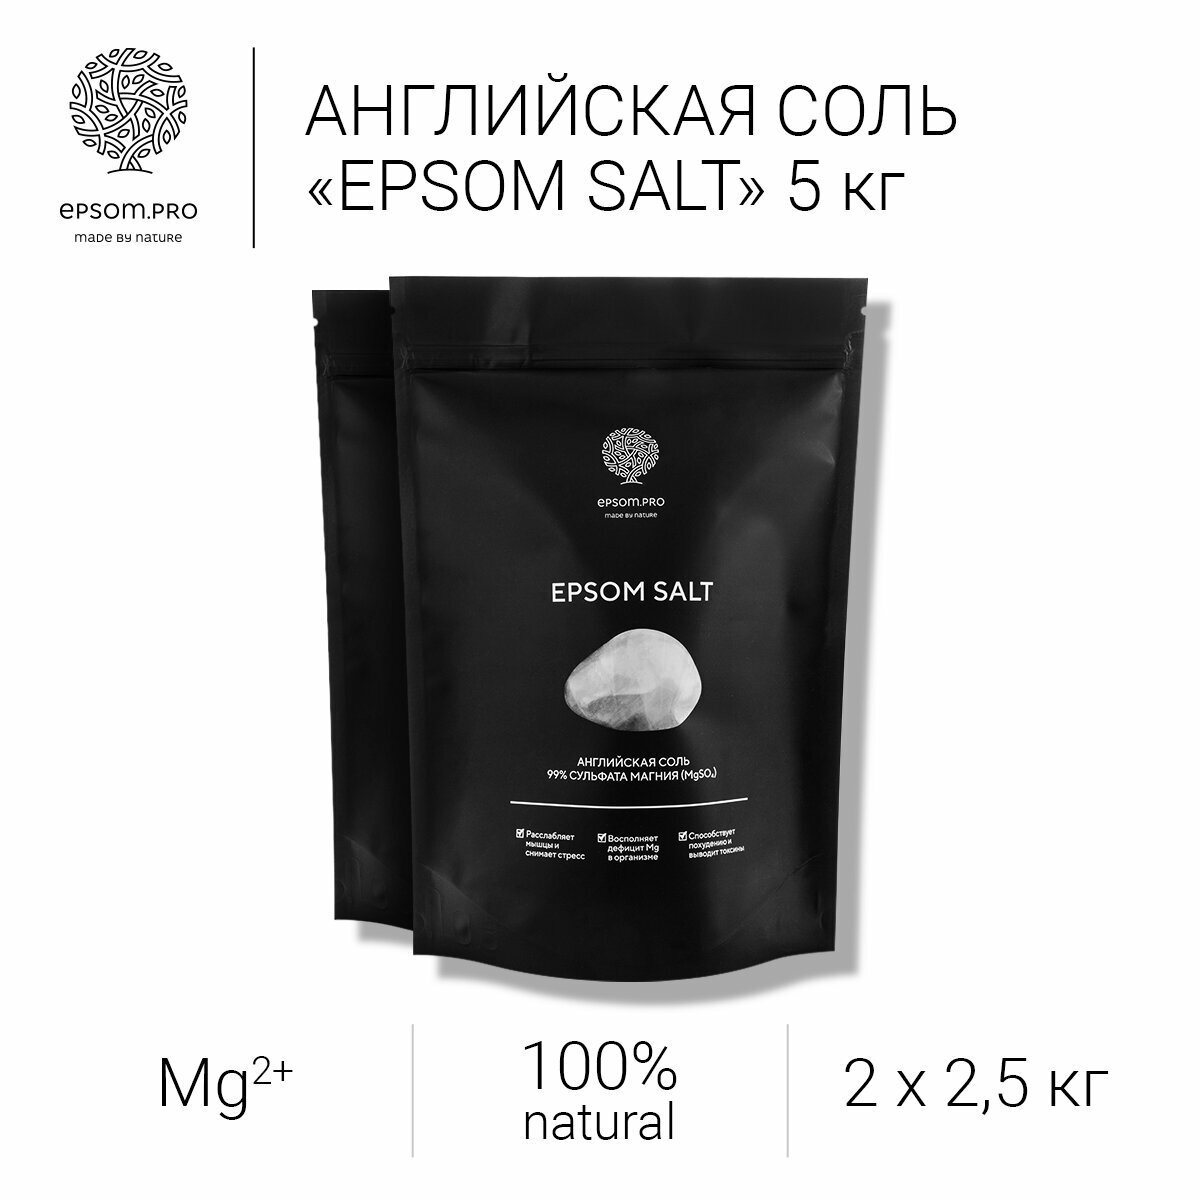 Соль для ванны Epsom.pro, Магниевая соль для ванны , премиальная английская соль, 2,5 кг "2 шт"